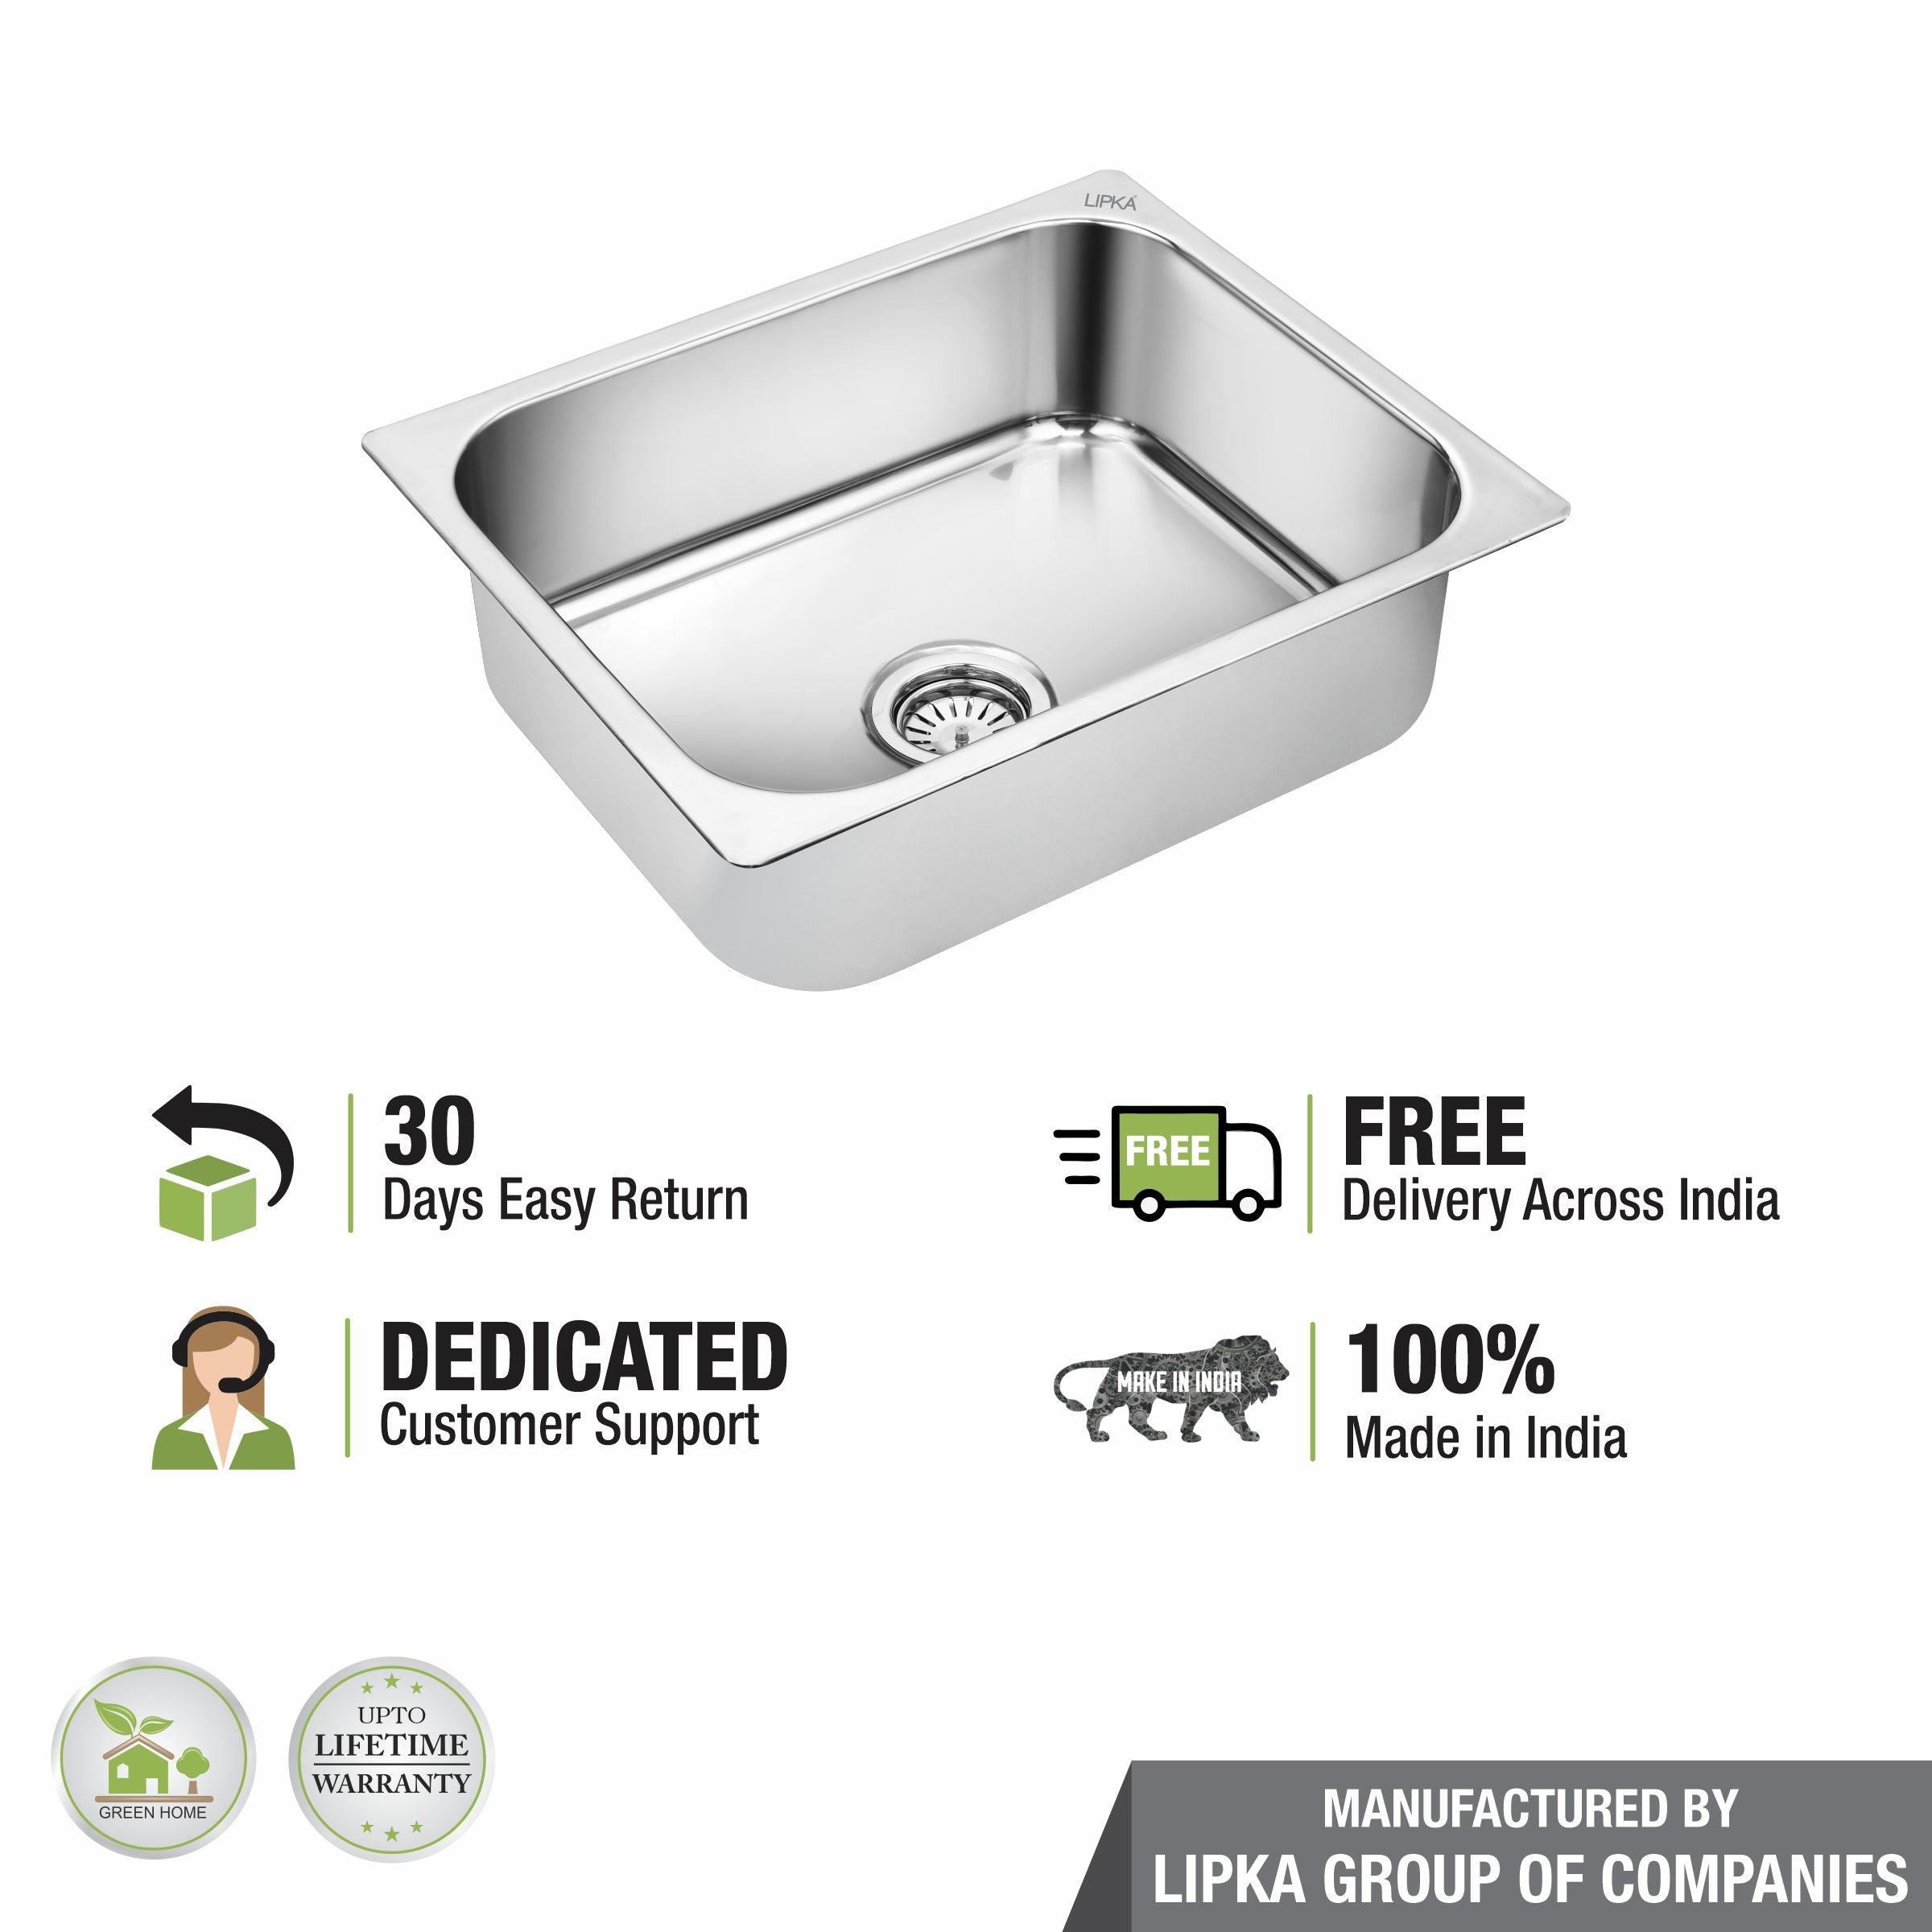 Square Single Bowl Kitchen Sink (24 x 18 x 9 Inches) - LIPKA - Lipka Home